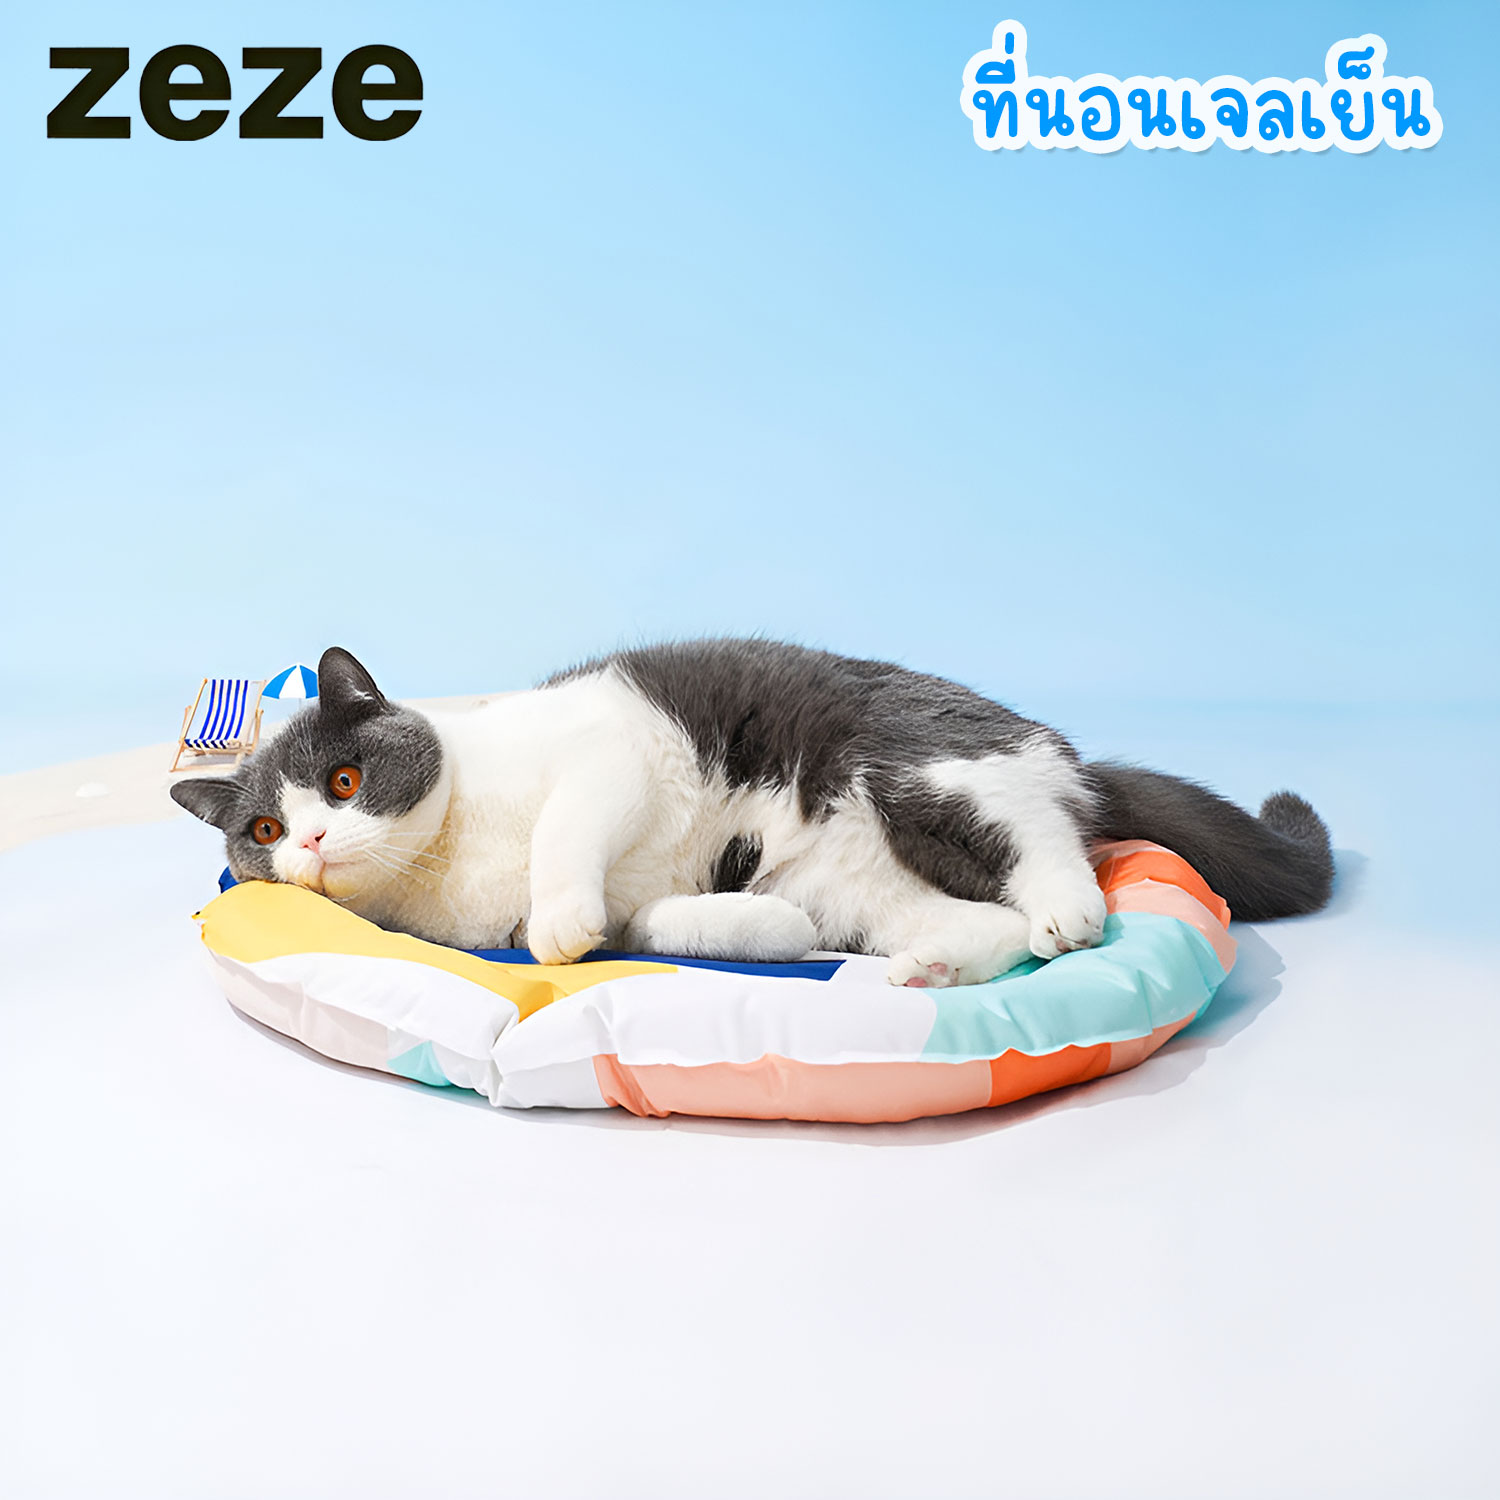 zeze Cooling Bed ที่นอนเจลเย็น สำหรับแมว หรือ สุนัขขนาดเล็ก ที่นอน 3 ชั้น ทนทาน เย็นสบายด้วยเจลโพลีเ